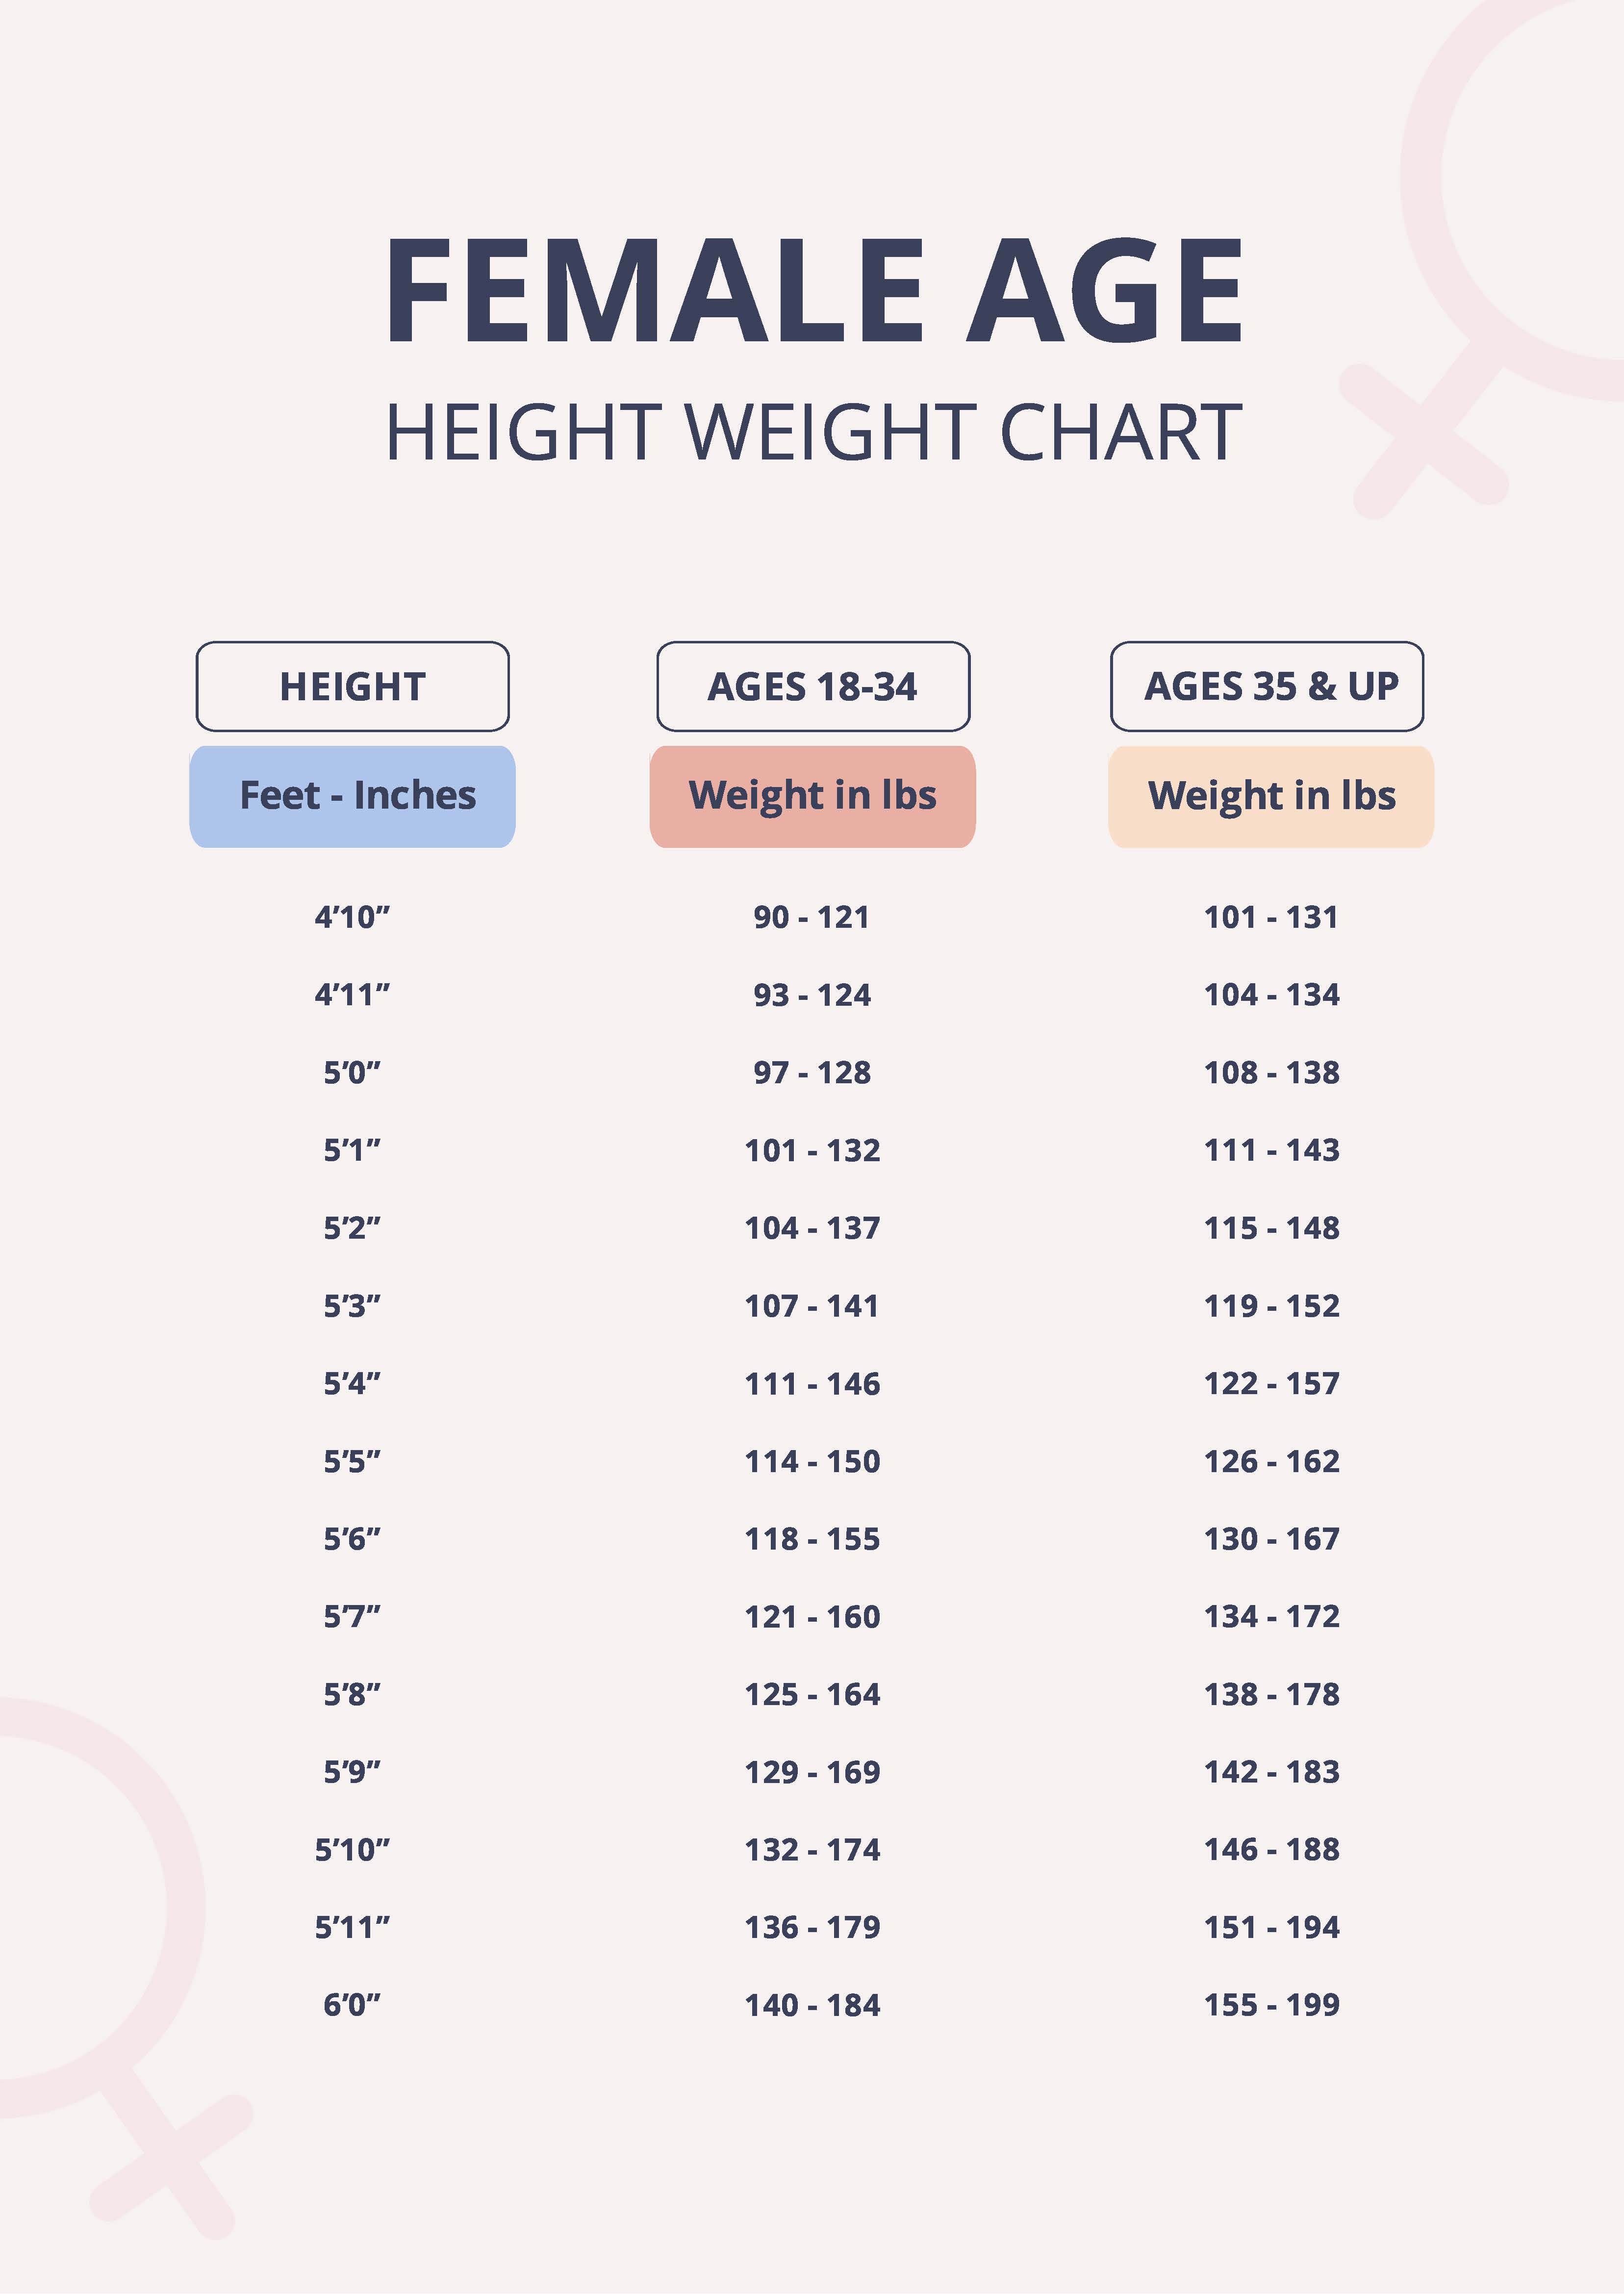 Height-weight chart